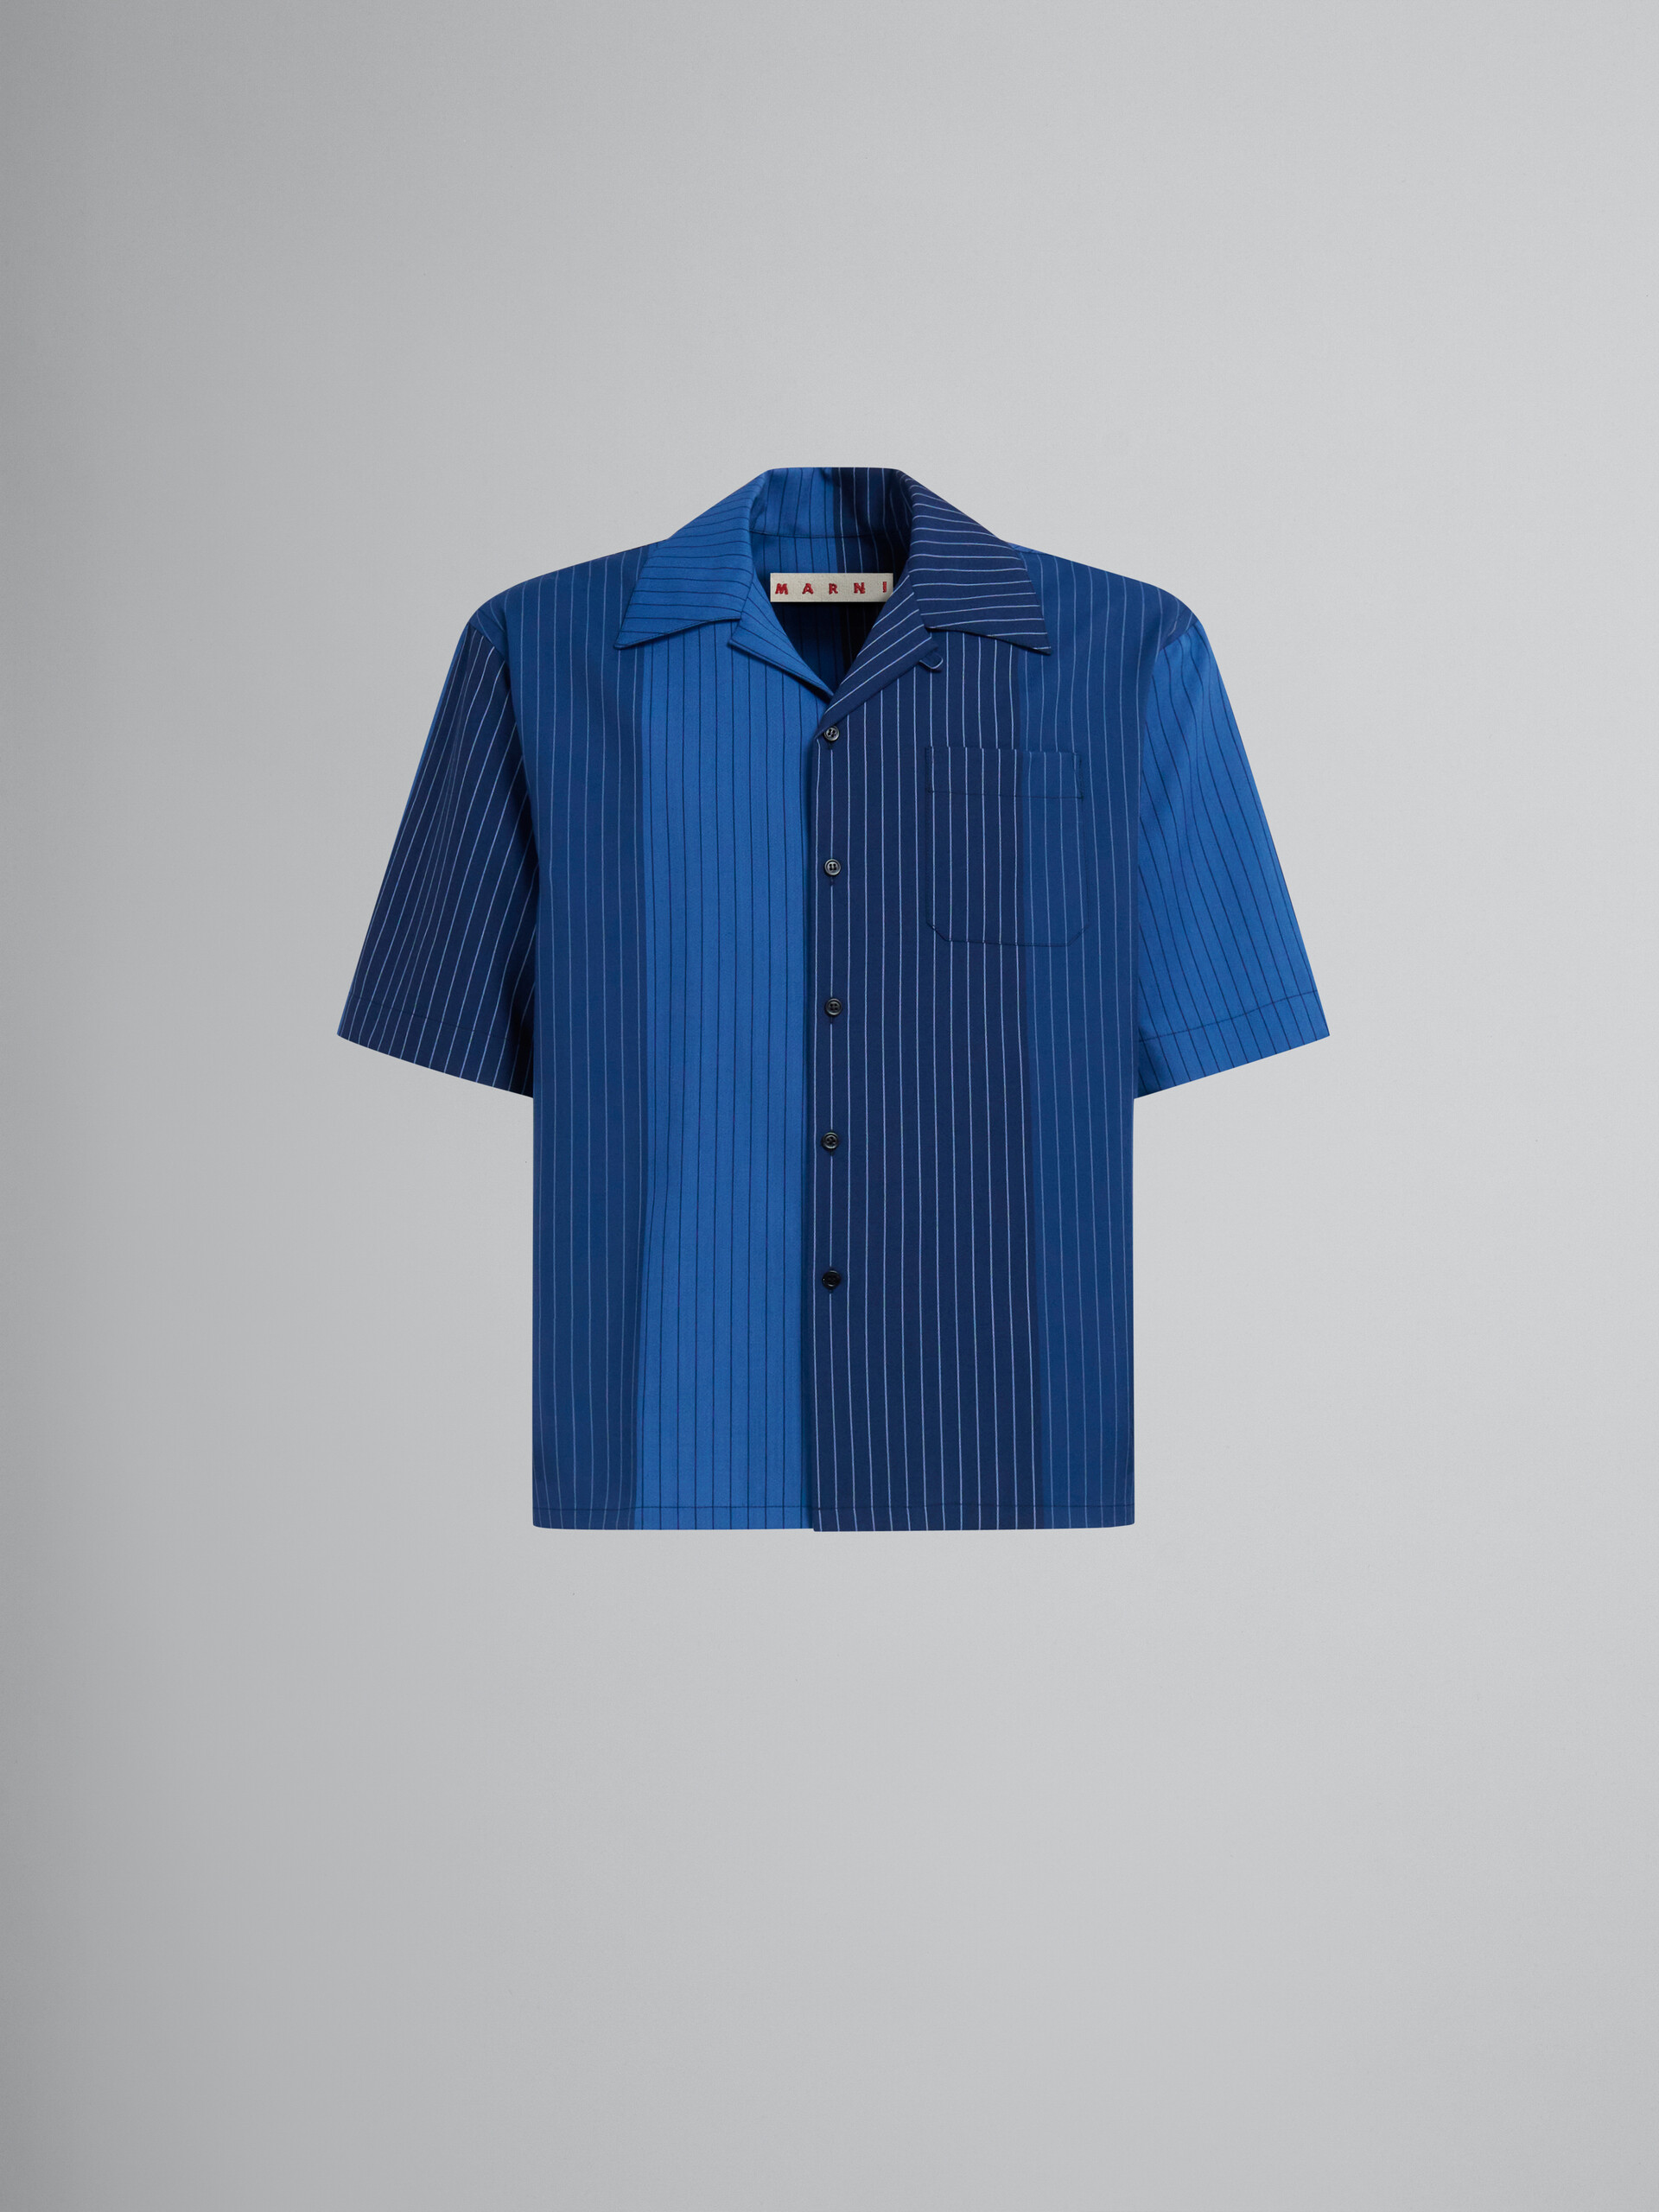 ブルー グラデーションピンストライプ ウール製ボーリングシャツ - シャツ - Image 1